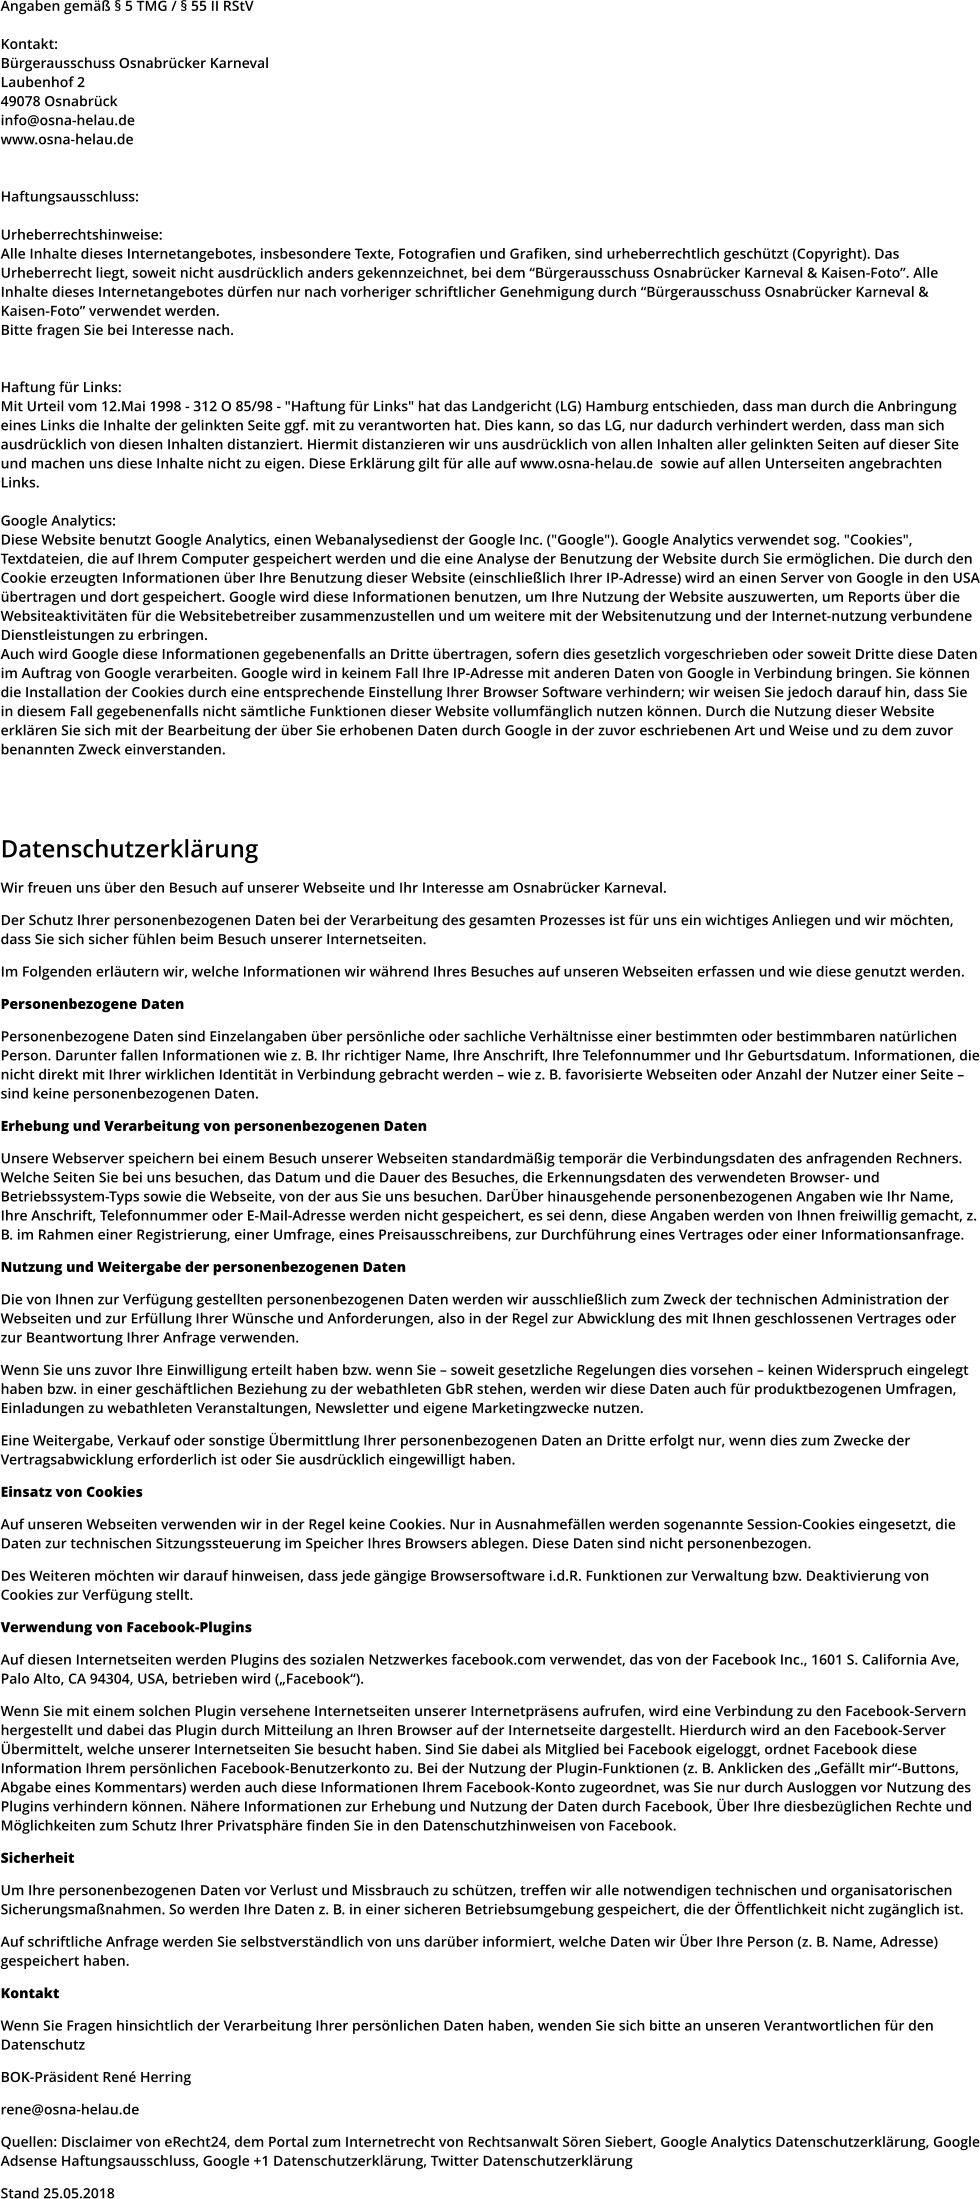 Angaben gemäß § 5 TMG / § 55 II RStV  Kontakt: Bürgerausschuss Osnabrücker Karneval Laubenhof 2 49078 Osnabrück info@osna-helau.de www.osna-helau.de   Haftungsausschluss:  Urheberrechtshinweise: Alle Inhalte dieses Internetangebotes, insbesondere Texte, Fotografien und Grafiken, sind urheberrechtlich geschützt (Copyright). Das Urheberrecht liegt, soweit nicht ausdrücklich anders gekennzeichnet, bei dem “Bürgerausschuss Osnabrücker Karneval & Kaisen-Foto”. Alle Inhalte dieses Internetangebotes dürfen nur nach vorheriger schriftlicher Genehmigung durch “Bürgerausschuss Osnabrücker Karneval & Kaisen-Foto” verwendet werden.  Bitte fragen Sie bei Interesse nach.   Haftung für Links: Mit Urteil vom 12.Mai 1998 - 312 O 85/98 - "Haftung für Links" hat das Landgericht (LG) Hamburg entschieden, dass man durch die Anbringung eines Links die Inhalte der gelinkten Seite ggf. mit zu verantworten hat. Dies kann, so das LG, nur dadurch verhindert werden, dass man sich ausdrücklich von diesen Inhalten distanziert. Hiermit distanzieren wir uns ausdrücklich von allen Inhalten aller gelinkten Seiten auf dieser Site und machen uns diese Inhalte nicht zu eigen. Diese Erklärung gilt für alle auf www.osna-helau.de  sowie auf allen Unterseiten angebrachten Links.  Google Analytics: Diese Website benutzt Google Analytics, einen Webanalysedienst der Google Inc. ("Google"). Google Analytics verwendet sog. "Cookies", Textdateien, die auf Ihrem Computer gespeichert werden und die eine Analyse der Benutzung der Website durch Sie ermöglichen. Die durch den Cookie erzeugten Informationen über Ihre Benutzung dieser Website (einschließlich Ihrer IP-Adresse) wird an einen Server von Google in den USA übertragen und dort gespeichert. Google wird diese Informationen benutzen, um Ihre Nutzung der Website auszuwerten, um Reports über die Websiteaktivitäten für die Websitebetreiber zusammenzustellen und um weitere mit der Websitenutzung und der Internet-nutzung verbundene Dienstleistungen zu erbringen.  Auch wird Google diese Informationen gegebenenfalls an Dritte übertragen, sofern dies gesetzlich vorgeschrieben oder soweit Dritte diese Daten im Auftrag von Google verarbeiten. Google wird in keinem Fall Ihre IP-Adresse mit anderen Daten von Google in Verbindung bringen. Sie können die Installation der Cookies durch eine entsprechende Einstellung Ihrer Browser Software verhindern; wir weisen Sie jedoch darauf hin, dass Sie in diesem Fall gegebenenfalls nicht sämtliche Funktionen dieser Website vollumfänglich nutzen können. Durch die Nutzung dieser Website erklären Sie sich mit der Bearbeitung der über Sie erhobenen Daten durch Google in der zuvor eschriebenen Art und Weise und zu dem zuvor benannten Zweck einverstanden.     Datenschutzerklärung  Wir freuen uns über den Besuch auf unserer Webseite und Ihr Interesse am Osnabrücker Karneval.  Der Schutz Ihrer personenbezogenen Daten bei der Verarbeitung des gesamten Prozesses ist für uns ein wichtiges Anliegen und wir möchten, dass Sie sich sicher fühlen beim Besuch unserer Internetseiten.  Im Folgenden erläutern wir, welche Informationen wir während Ihres Besuches auf unseren Webseiten erfassen und wie diese genutzt werden.  Personenbezogene Daten  Personenbezogene Daten sind Einzelangaben über persönliche oder sachliche Verhältnisse einer bestimmten oder bestimmbaren natürlichen Person. Darunter fallen Informationen wie z. B. Ihr richtiger Name, Ihre Anschrift, Ihre Telefonnummer und Ihr Geburtsdatum. Informationen, die nicht direkt mit Ihrer wirklichen Identität in Verbindung gebracht werden – wie z. B. favorisierte Webseiten oder Anzahl der Nutzer einer Seite – sind keine personenbezogenen Daten.  Erhebung und Verarbeitung von personenbezogenen Daten  Unsere Webserver speichern bei einem Besuch unserer Webseiten standardmäßig temporär die Verbindungsdaten des anfragenden Rechners. Welche Seiten Sie bei uns besuchen, das Datum und die Dauer des Besuches, die Erkennungsdaten des verwendeten Browser- und Betriebssystem-Typs sowie die Webseite, von der aus Sie uns besuchen. DarÜber hinausgehende personenbezogenen Angaben wie Ihr Name, Ihre Anschrift, Telefonnummer oder E-Mail-Adresse werden nicht gespeichert, es sei denn, diese Angaben werden von Ihnen freiwillig gemacht, z. B. im Rahmen einer Registrierung, einer Umfrage, eines Preisausschreibens, zur Durchführung eines Vertrages oder einer Informationsanfrage.  Nutzung und Weitergabe der personenbezogenen Daten  Die von Ihnen zur Verfügung gestellten personenbezogenen Daten werden wir ausschließlich zum Zweck der technischen Administration der Webseiten und zur Erfüllung Ihrer Wünsche und Anforderungen, also in der Regel zur Abwicklung des mit Ihnen geschlossenen Vertrages oder zur Beantwortung Ihrer Anfrage verwenden.  Wenn Sie uns zuvor Ihre Einwilligung erteilt haben bzw. wenn Sie – soweit gesetzliche Regelungen dies vorsehen – keinen Widerspruch eingelegt haben bzw. in einer geschäftlichen Beziehung zu der webathleten GbR stehen, werden wir diese Daten auch für produktbezogenen Umfragen, Einladungen zu webathleten Veranstaltungen, Newsletter und eigene Marketingzwecke nutzen.  Eine Weitergabe, Verkauf oder sonstige Übermittlung Ihrer personenbezogenen Daten an Dritte erfolgt nur, wenn dies zum Zwecke der Vertragsabwicklung erforderlich ist oder Sie ausdrücklich eingewilligt haben.  Einsatz von Cookies  Auf unseren Webseiten verwenden wir in der Regel keine Cookies. Nur in Ausnahmefällen werden sogenannte Session-Cookies eingesetzt, die Daten zur technischen Sitzungssteuerung im Speicher Ihres Browsers ablegen. Diese Daten sind nicht personenbezogen.  Des Weiteren möchten wir darauf hinweisen, dass jede gängige Browsersoftware i.d.R. Funktionen zur Verwaltung bzw. Deaktivierung von Cookies zur Verfügung stellt.  Verwendung von Facebook-Plugins  Auf diesen Internetseiten werden Plugins des sozialen Netzwerkes facebook.com verwendet, das von der Facebook Inc., 1601 S. California Ave, Palo Alto, CA 94304, USA, betrieben wird („Facebook“).  Wenn Sie mit einem solchen Plugin versehene Internetseiten unserer Internetpräsens aufrufen, wird eine Verbindung zu den Facebook-Servern hergestellt und dabei das Plugin durch Mitteilung an Ihren Browser auf der Internetseite dargestellt. Hierdurch wird an den Facebook-Server Übermittelt, welche unserer Internetseiten Sie besucht haben. Sind Sie dabei als Mitglied bei Facebook eigeloggt, ordnet Facebook diese Information Ihrem persönlichen Facebook-Benutzerkonto zu. Bei der Nutzung der Plugin-Funktionen (z. B. Anklicken des „Gefällt mir“-Buttons, Abgabe eines Kommentars) werden auch diese Informationen Ihrem Facebook-Konto zugeordnet, was Sie nur durch Ausloggen vor Nutzung des Plugins verhindern können. Nähere Informationen zur Erhebung und Nutzung der Daten durch Facebook, Über Ihre diesbezüglichen Rechte und Möglichkeiten zum Schutz Ihrer Privatsphäre finden Sie in den Datenschutzhinweisen von Facebook.  Sicherheit  Um Ihre personenbezogenen Daten vor Verlust und Missbrauch zu schützen, treffen wir alle notwendigen technischen und organisatorischen Sicherungsmaßnahmen. So werden Ihre Daten z. B. in einer sicheren Betriebsumgebung gespeichert, die der Öffentlichkeit nicht zugänglich ist.  Auf schriftliche Anfrage werden Sie selbstverständlich von uns darüber informiert, welche Daten wir Über Ihre Person (z. B. Name, Adresse) gespeichert haben.  Kontakt  Wenn Sie Fragen hinsichtlich der Verarbeitung Ihrer persönlichen Daten haben, wenden Sie sich bitte an unseren Verantwortlichen für den Datenschutz  BOK-Präsident René Herring  rene@osna-helau.de  Quellen: Disclaimer von eRecht24, dem Portal zum Internetrecht von Rechtsanwalt Sören Siebert, Google Analytics Datenschutzerklärung, Google Adsense Haftungsausschluss, Google +1 Datenschutzerklärung, Twitter Datenschutzerklärung  Stand 25.05.2018